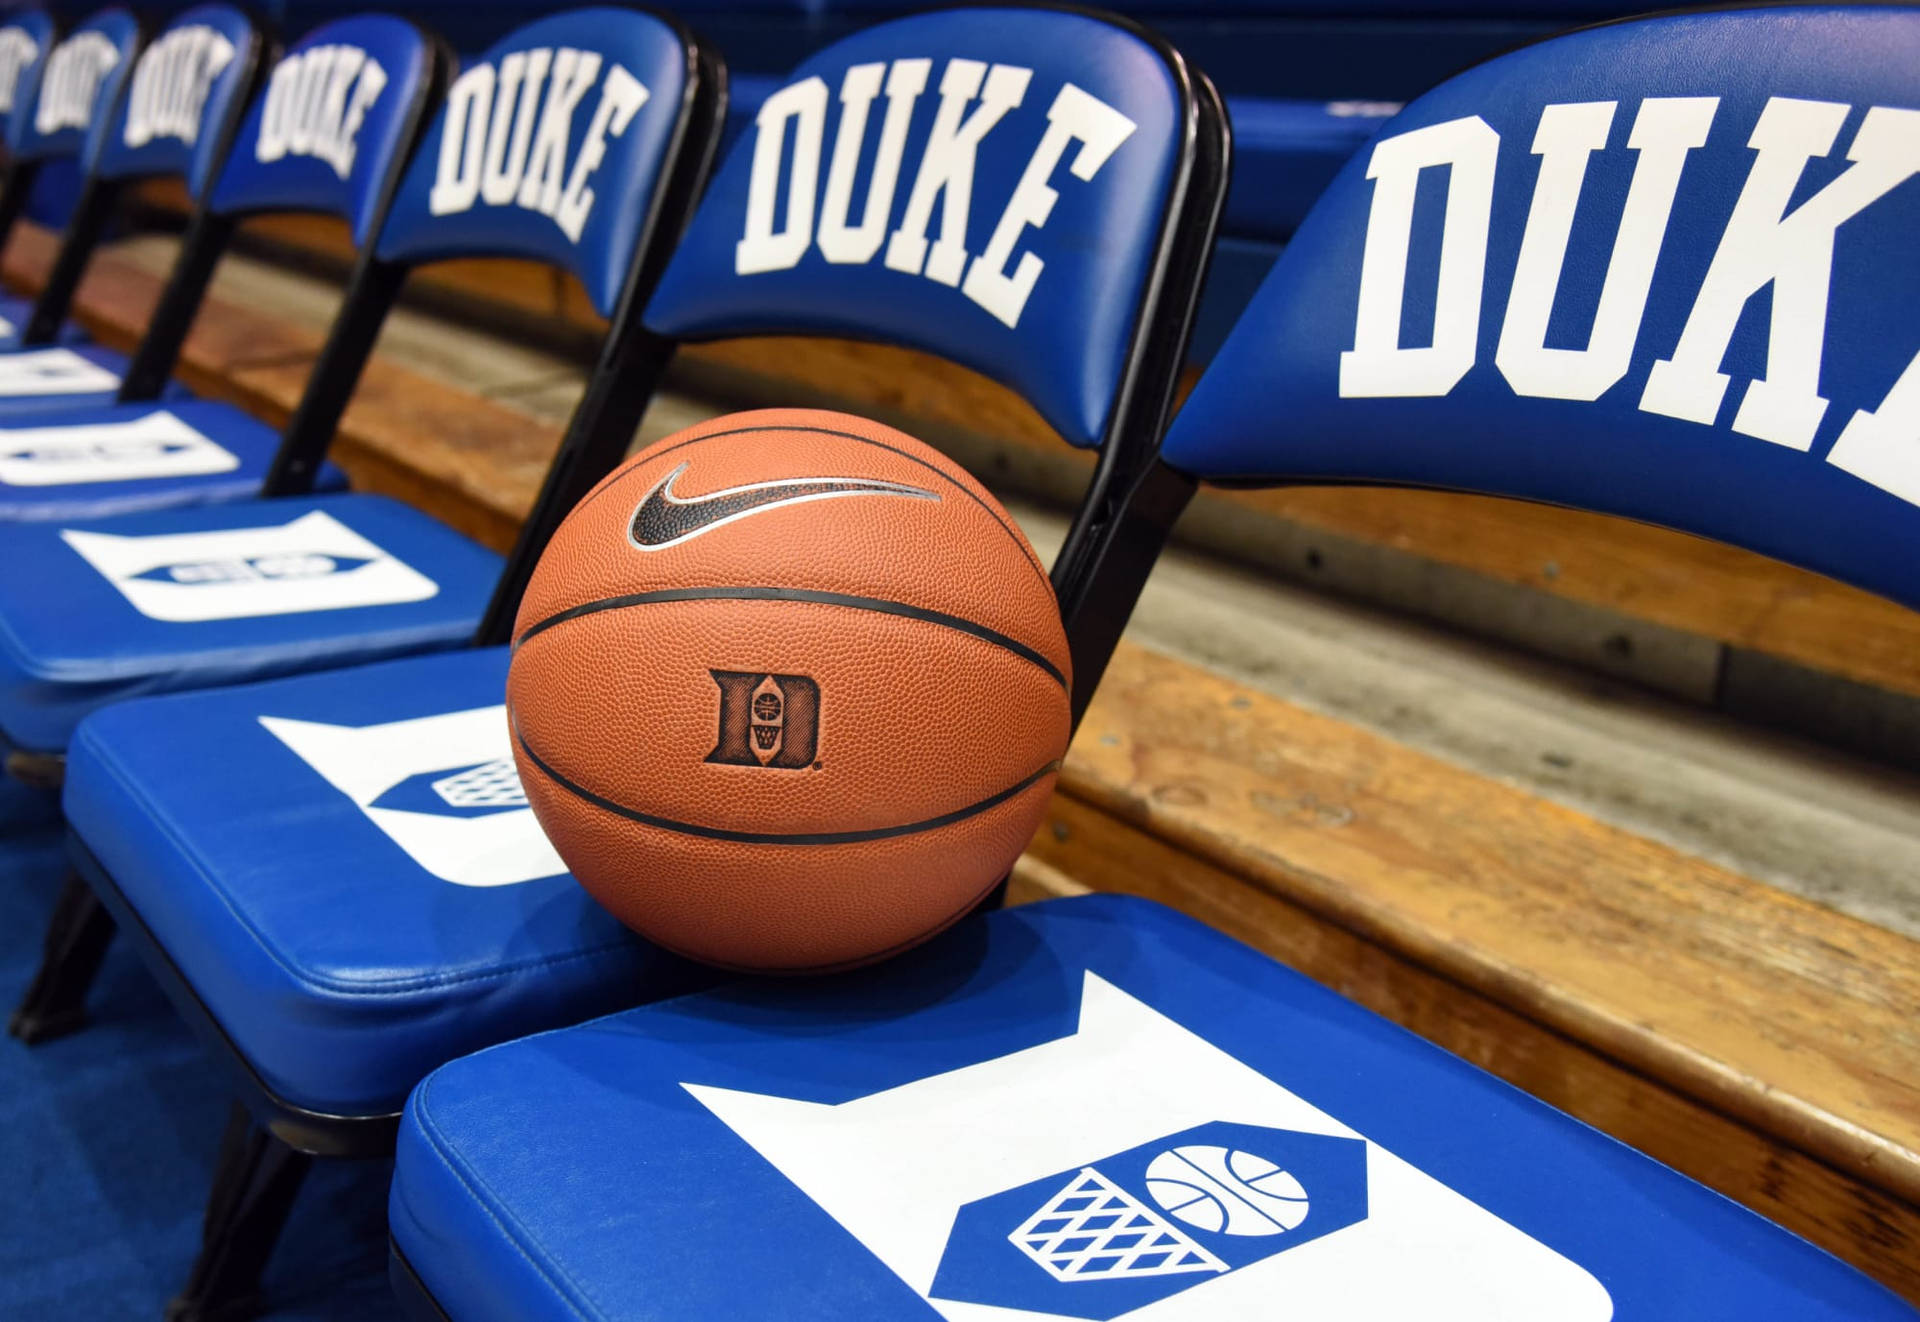 Duke Blue Devils Nike Basketball Wallpaper